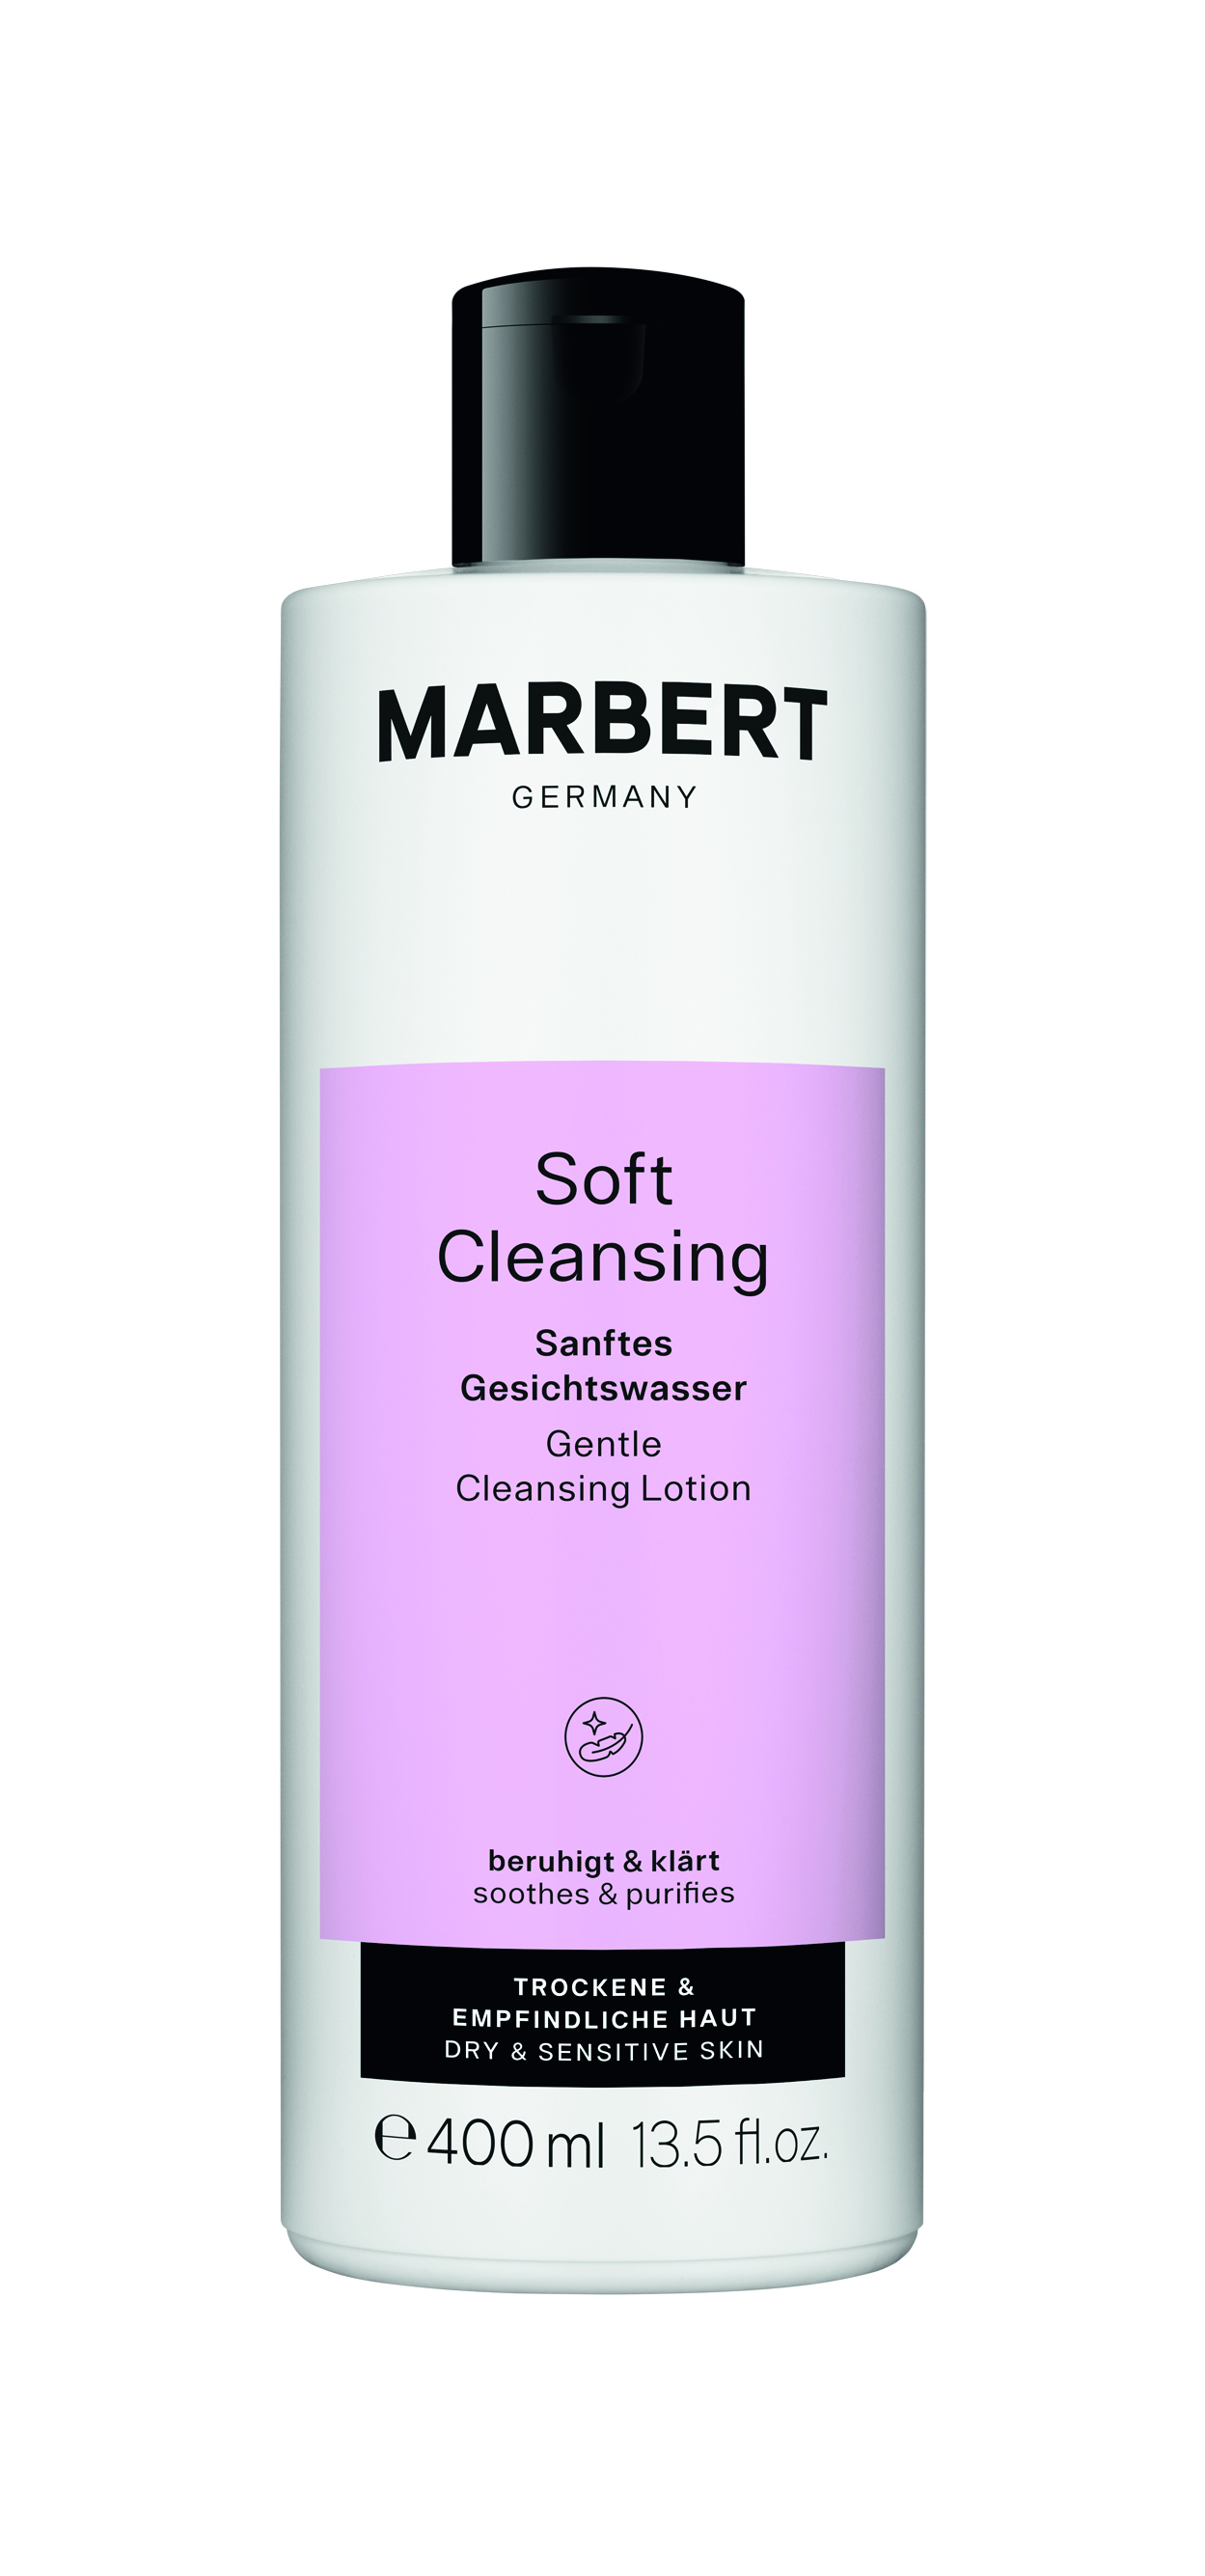 Soft Cleansing - Sanftes Gesichtswasser